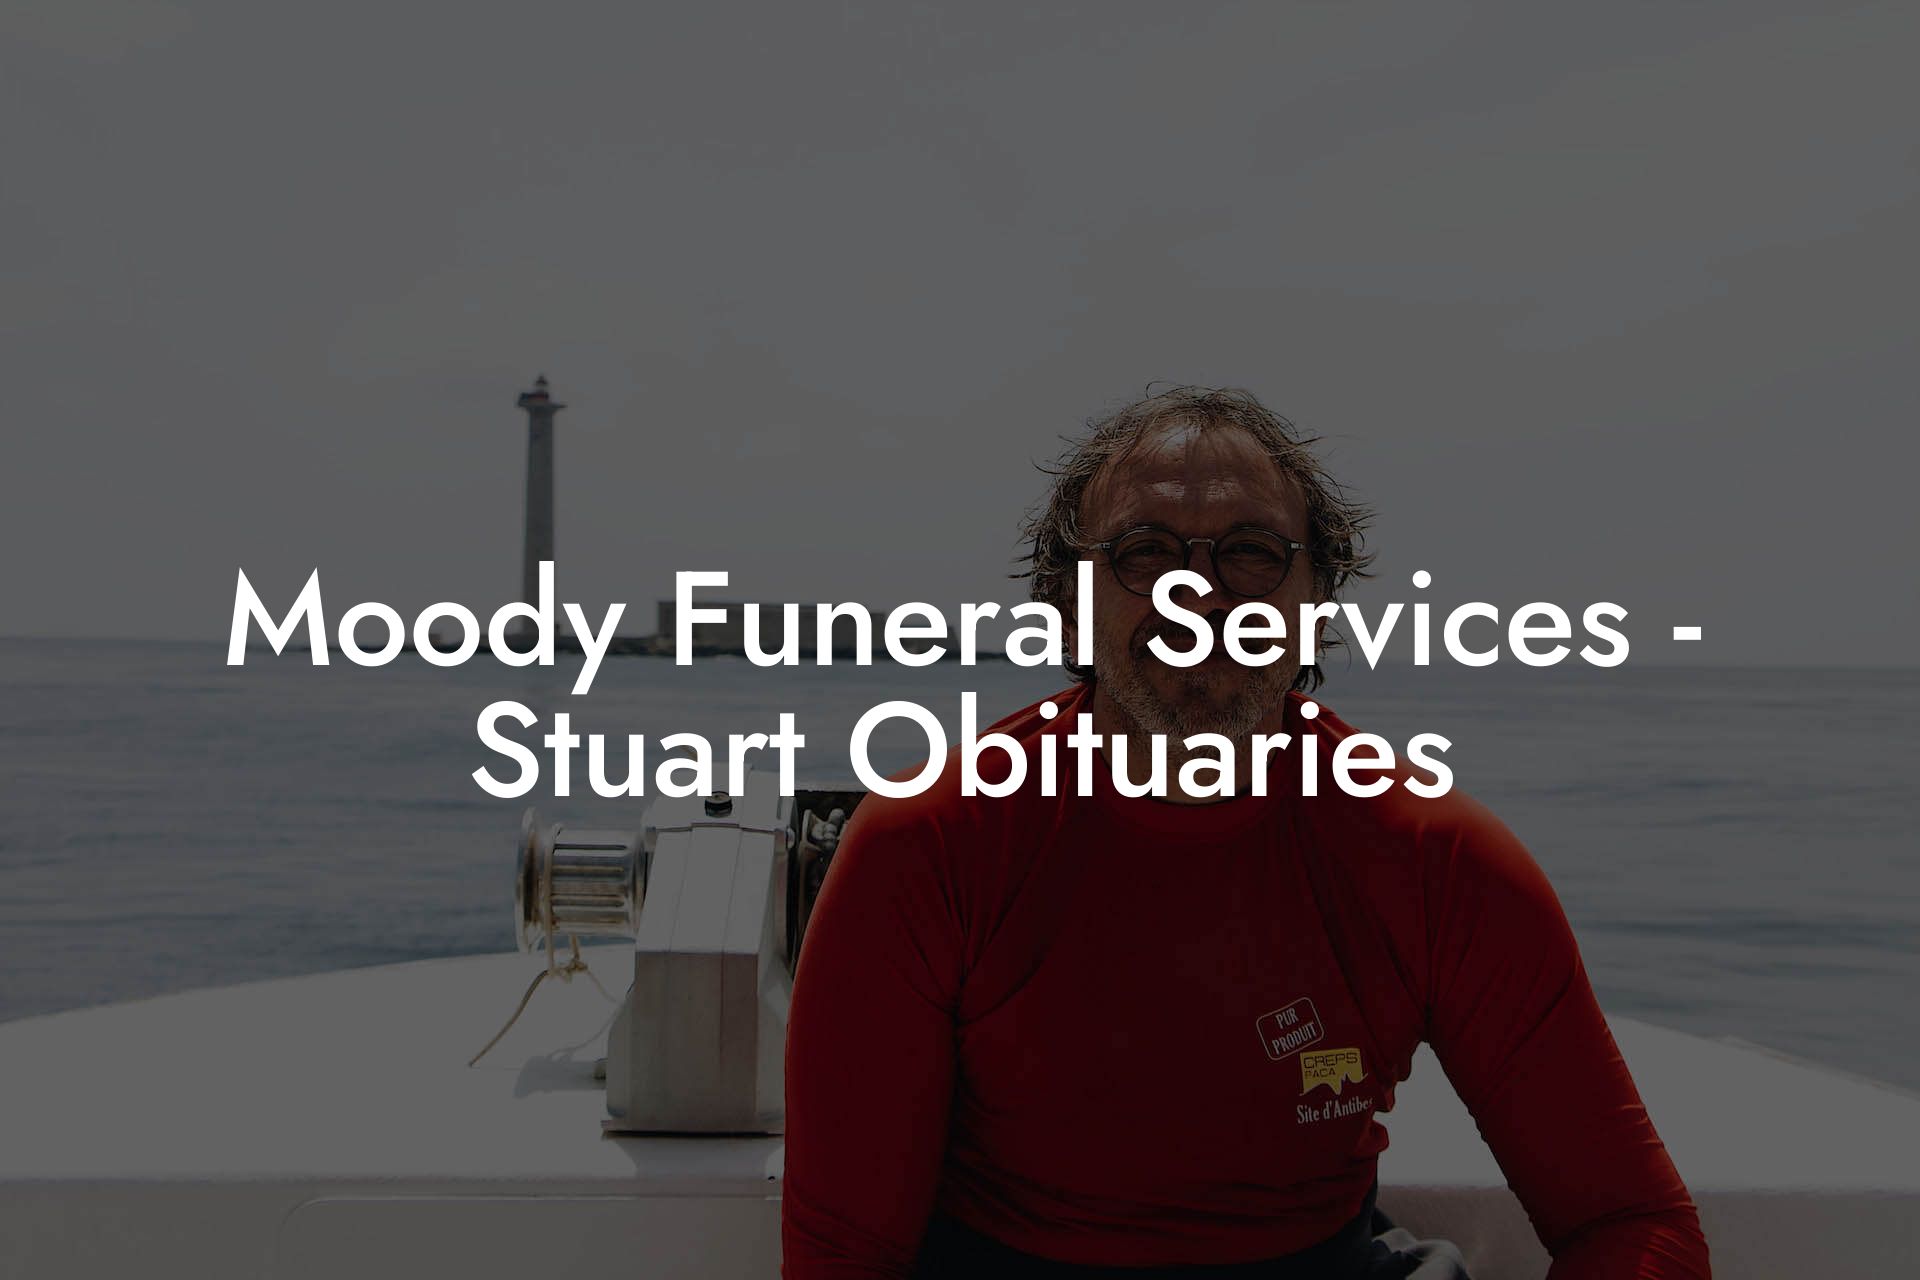 Moody Funeral Services - Stuart Obituaries